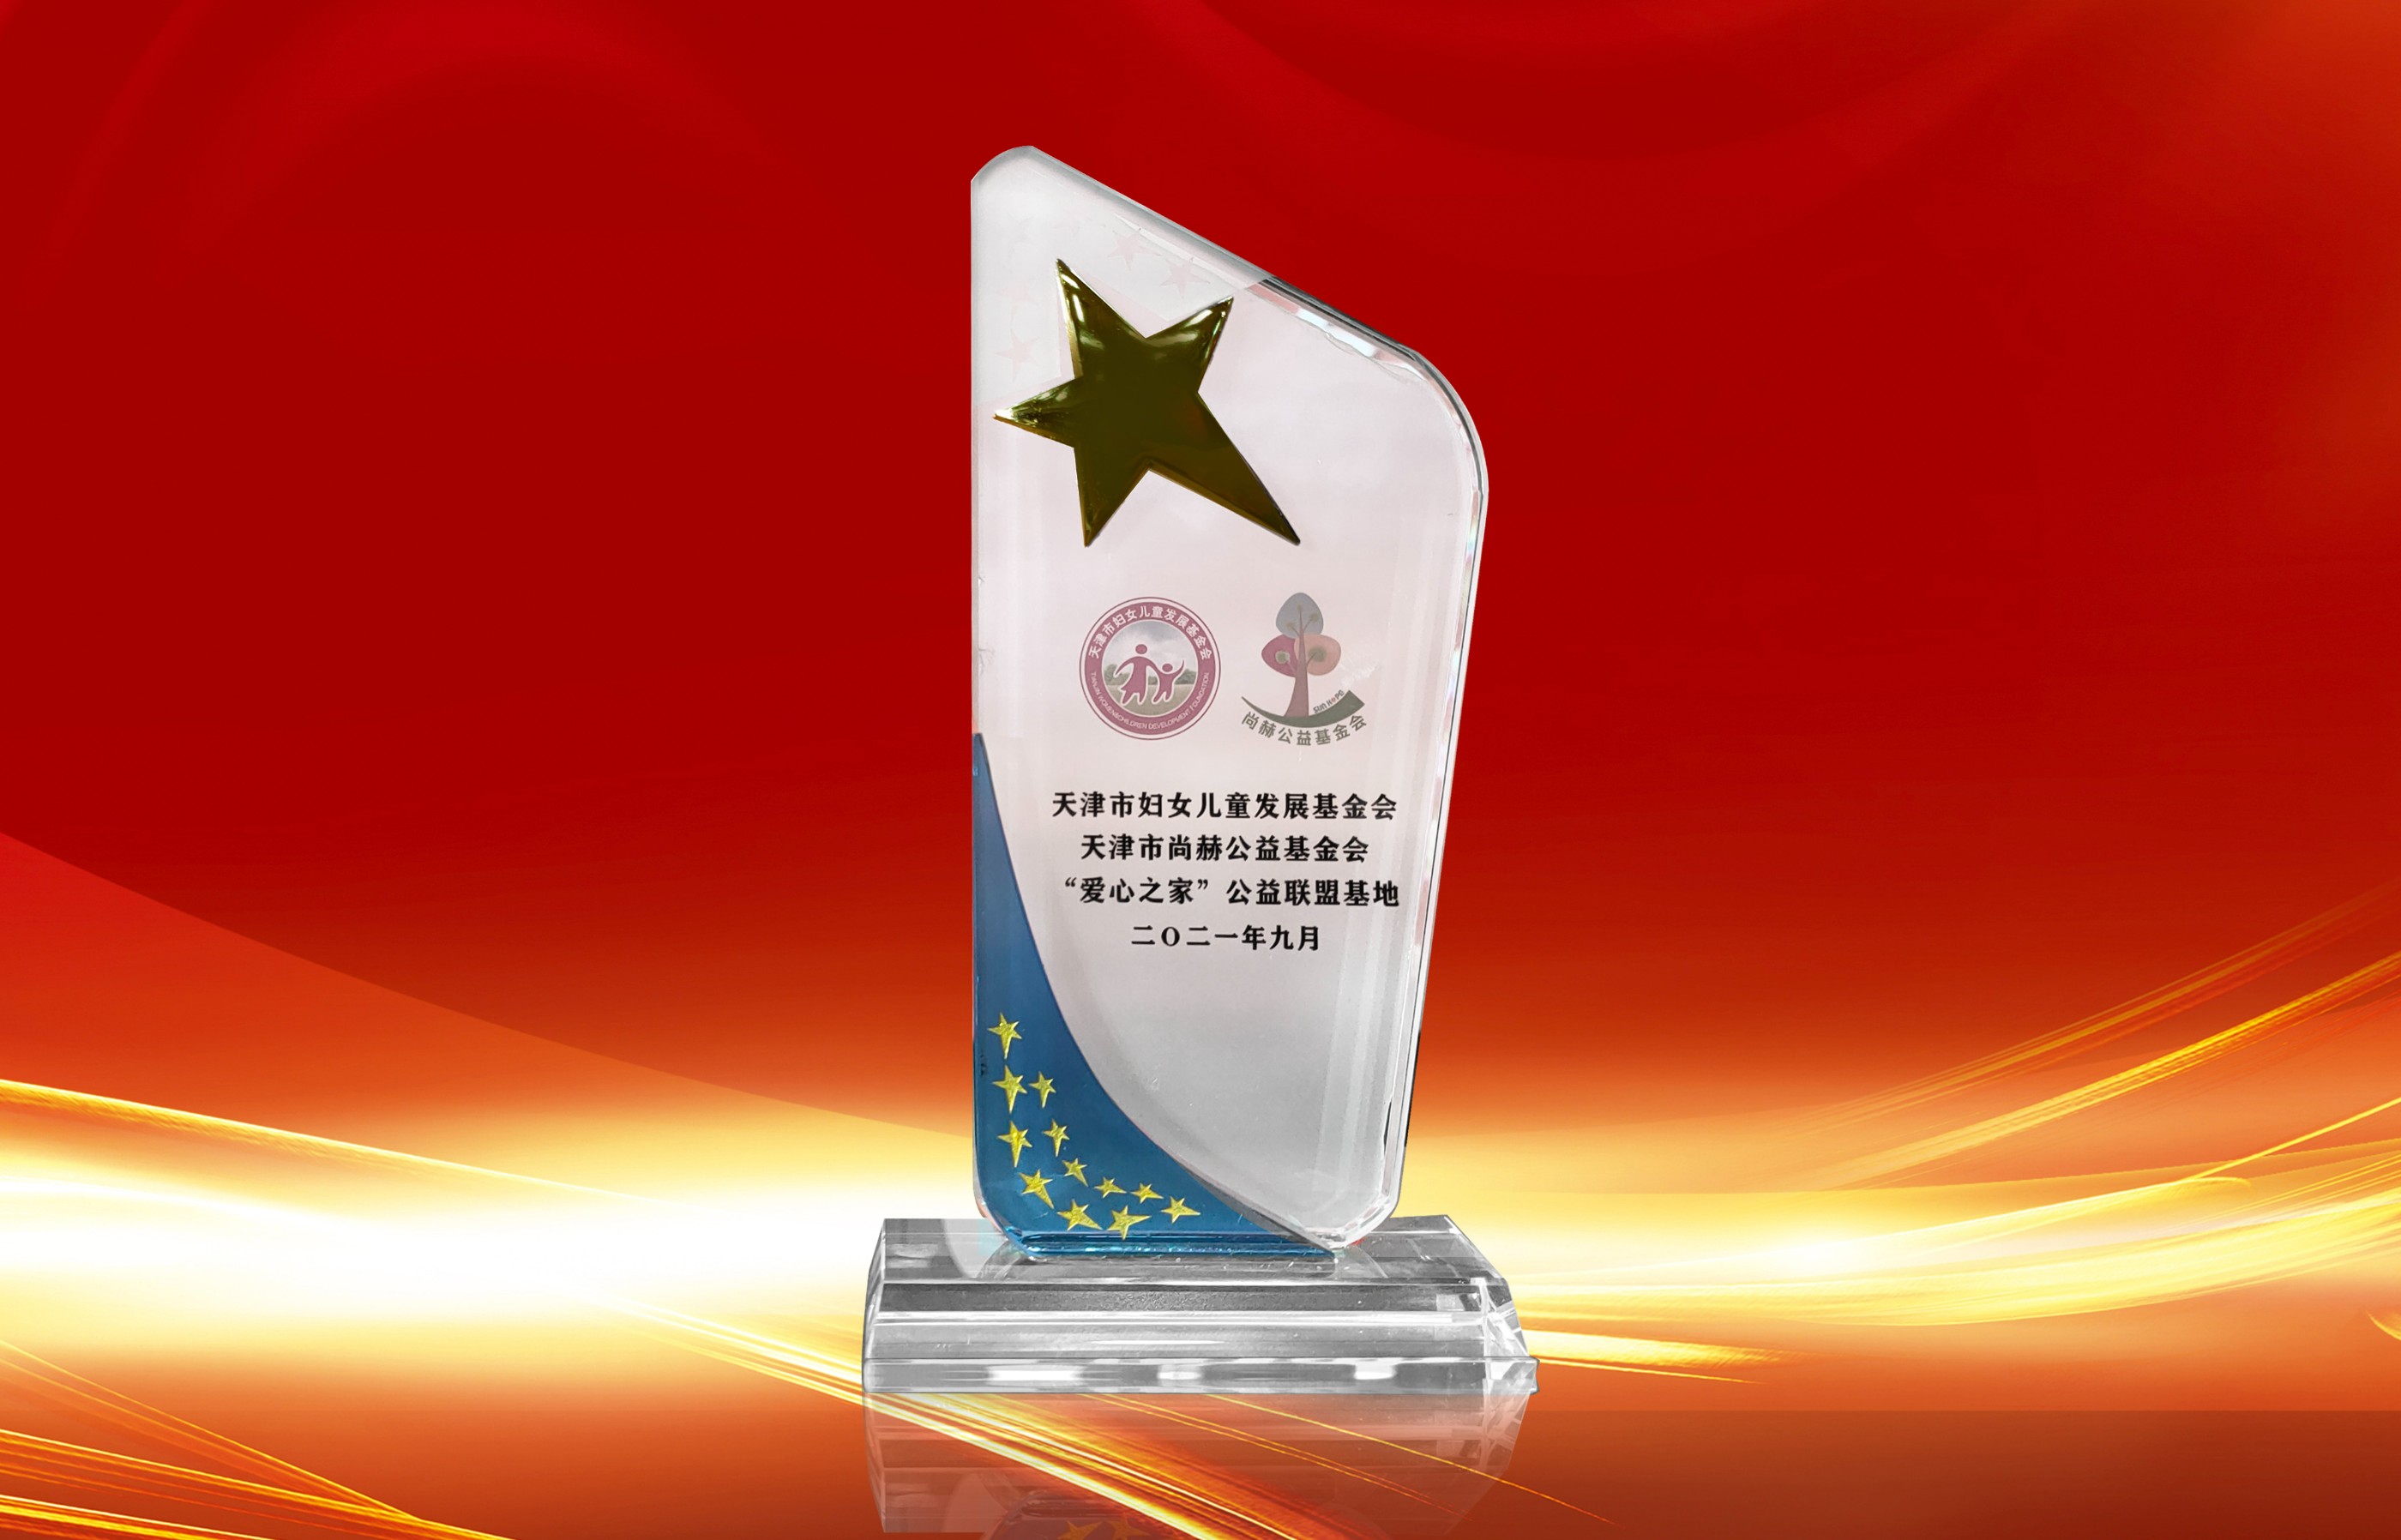 2021年9月-完美体育官方网站-完美体育(中国)有限公司荣获-天津市妇女联合会-“爱心之家”公益联盟基地奖杯